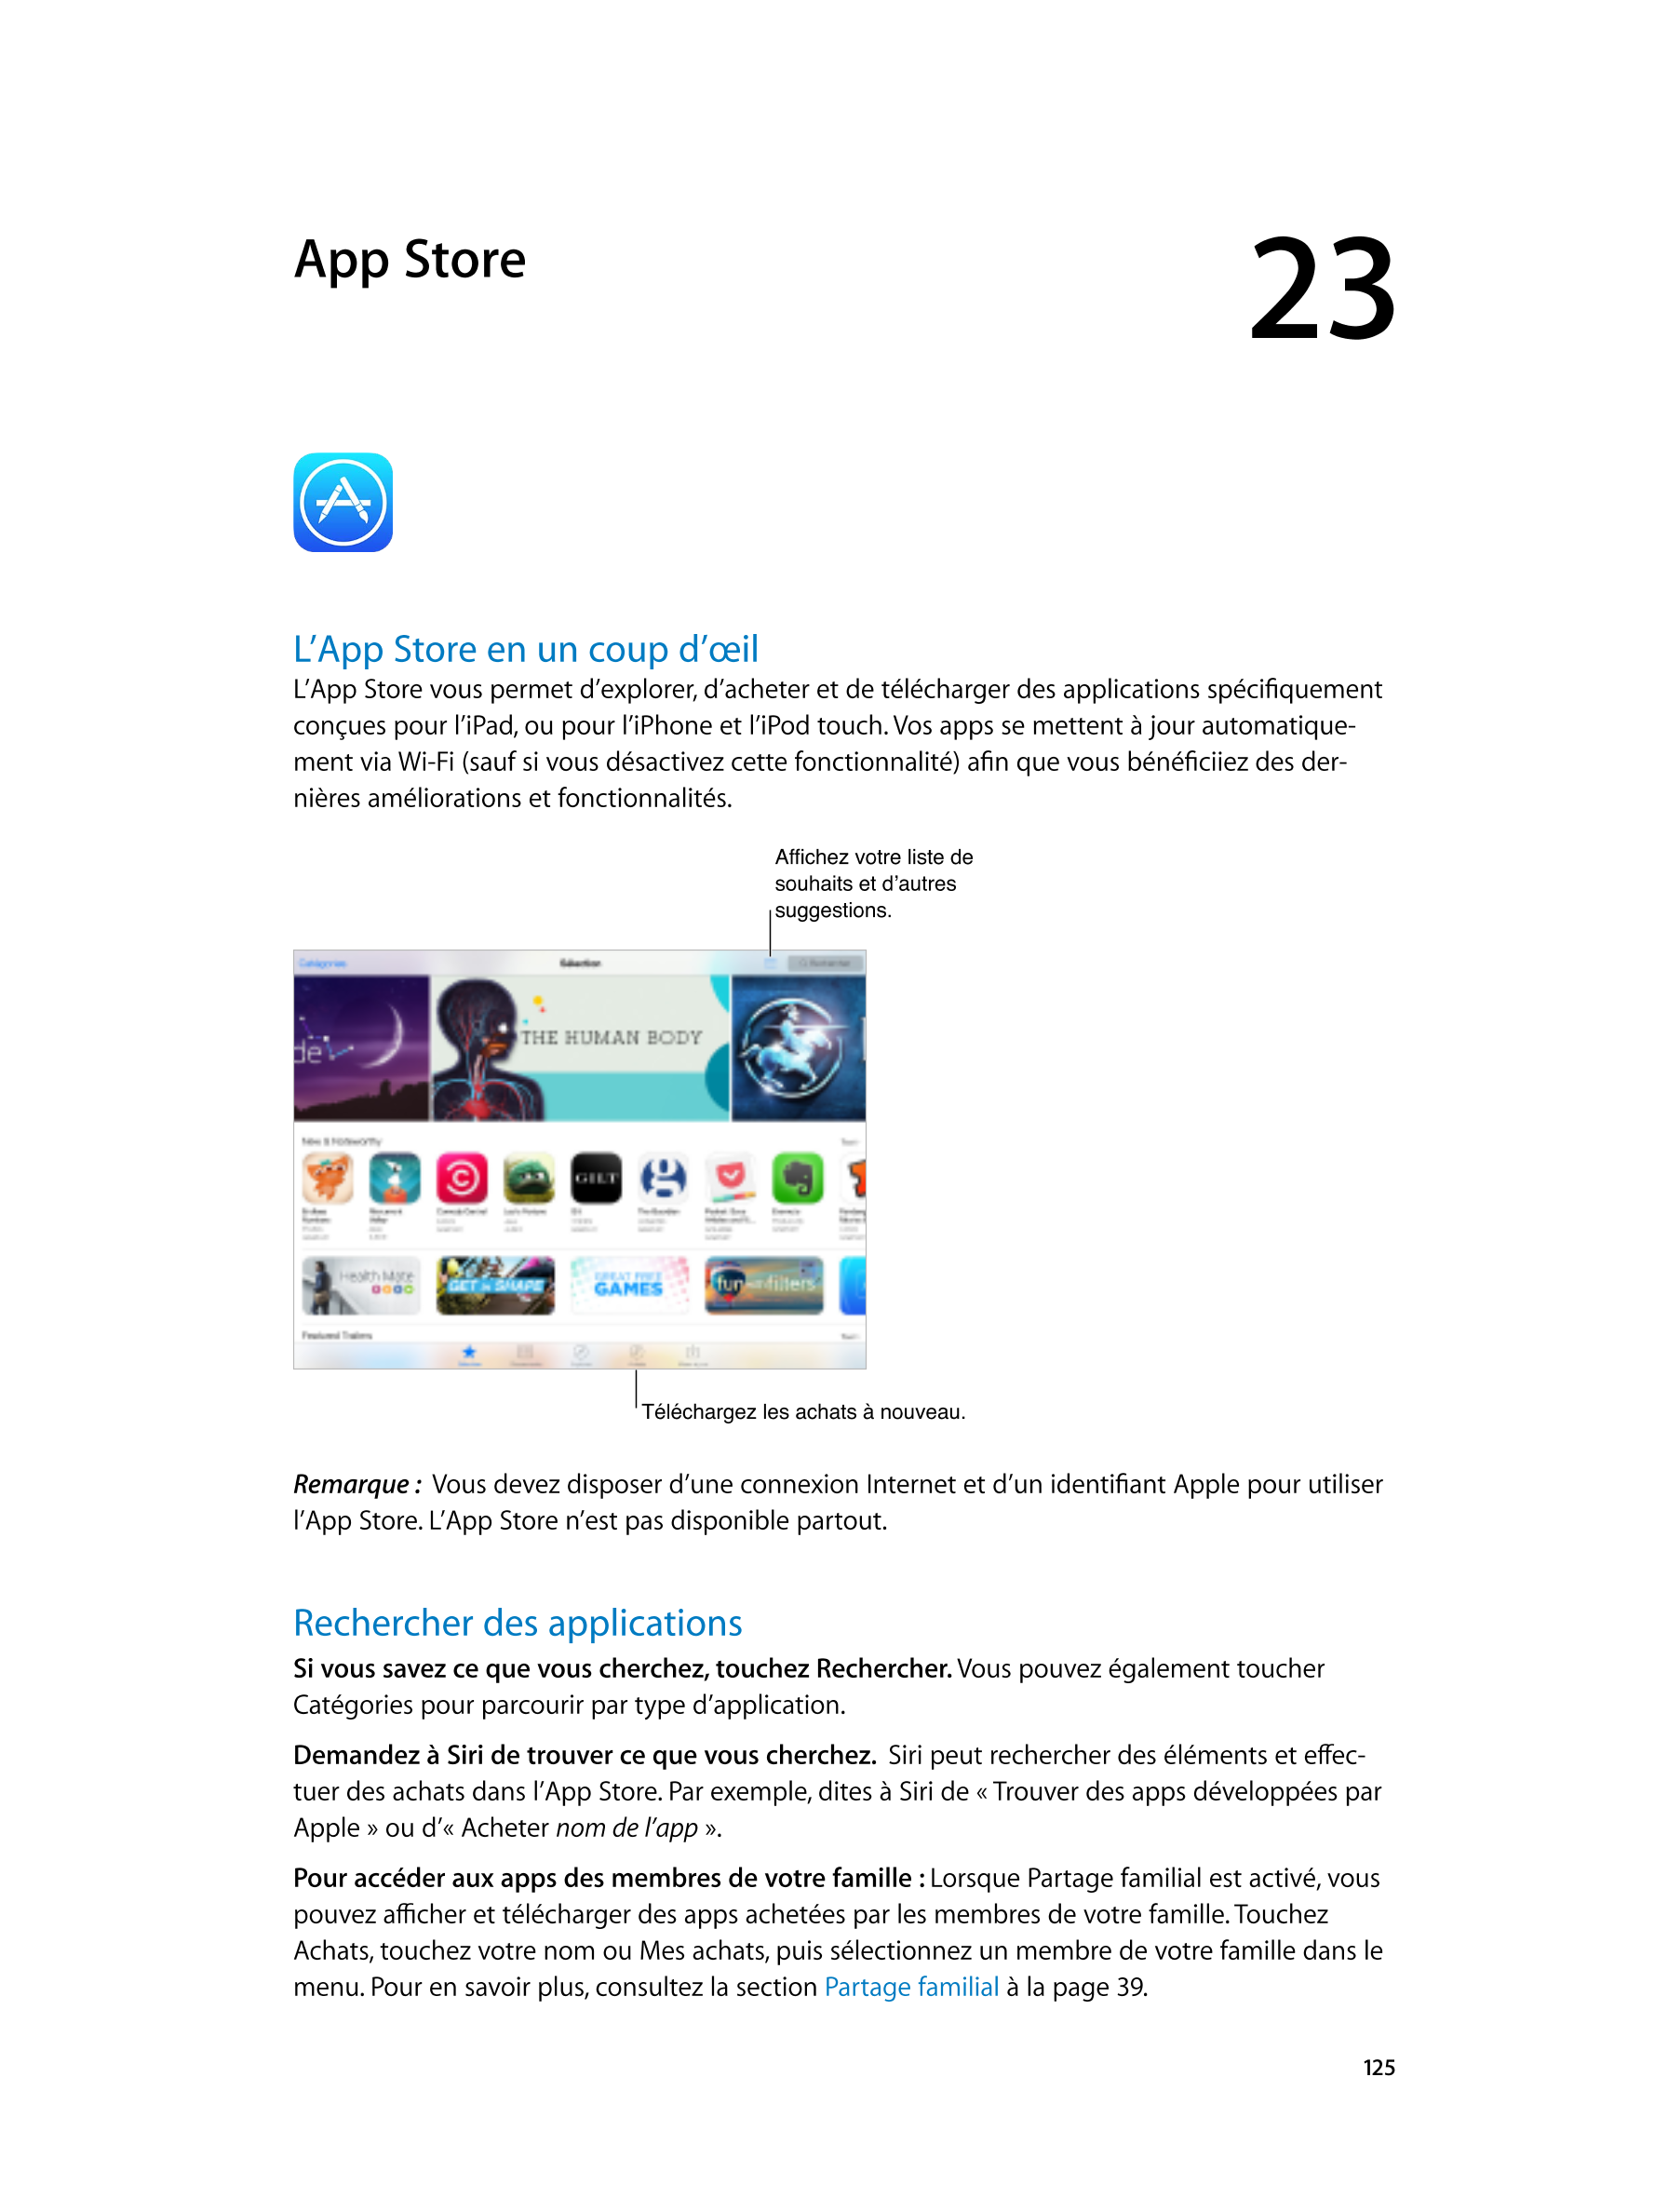  App  Store 23  
L’App  Store en un coup d’œil
L’App Store vous permet d’explorer, d’acheter et de télécharger des applications 